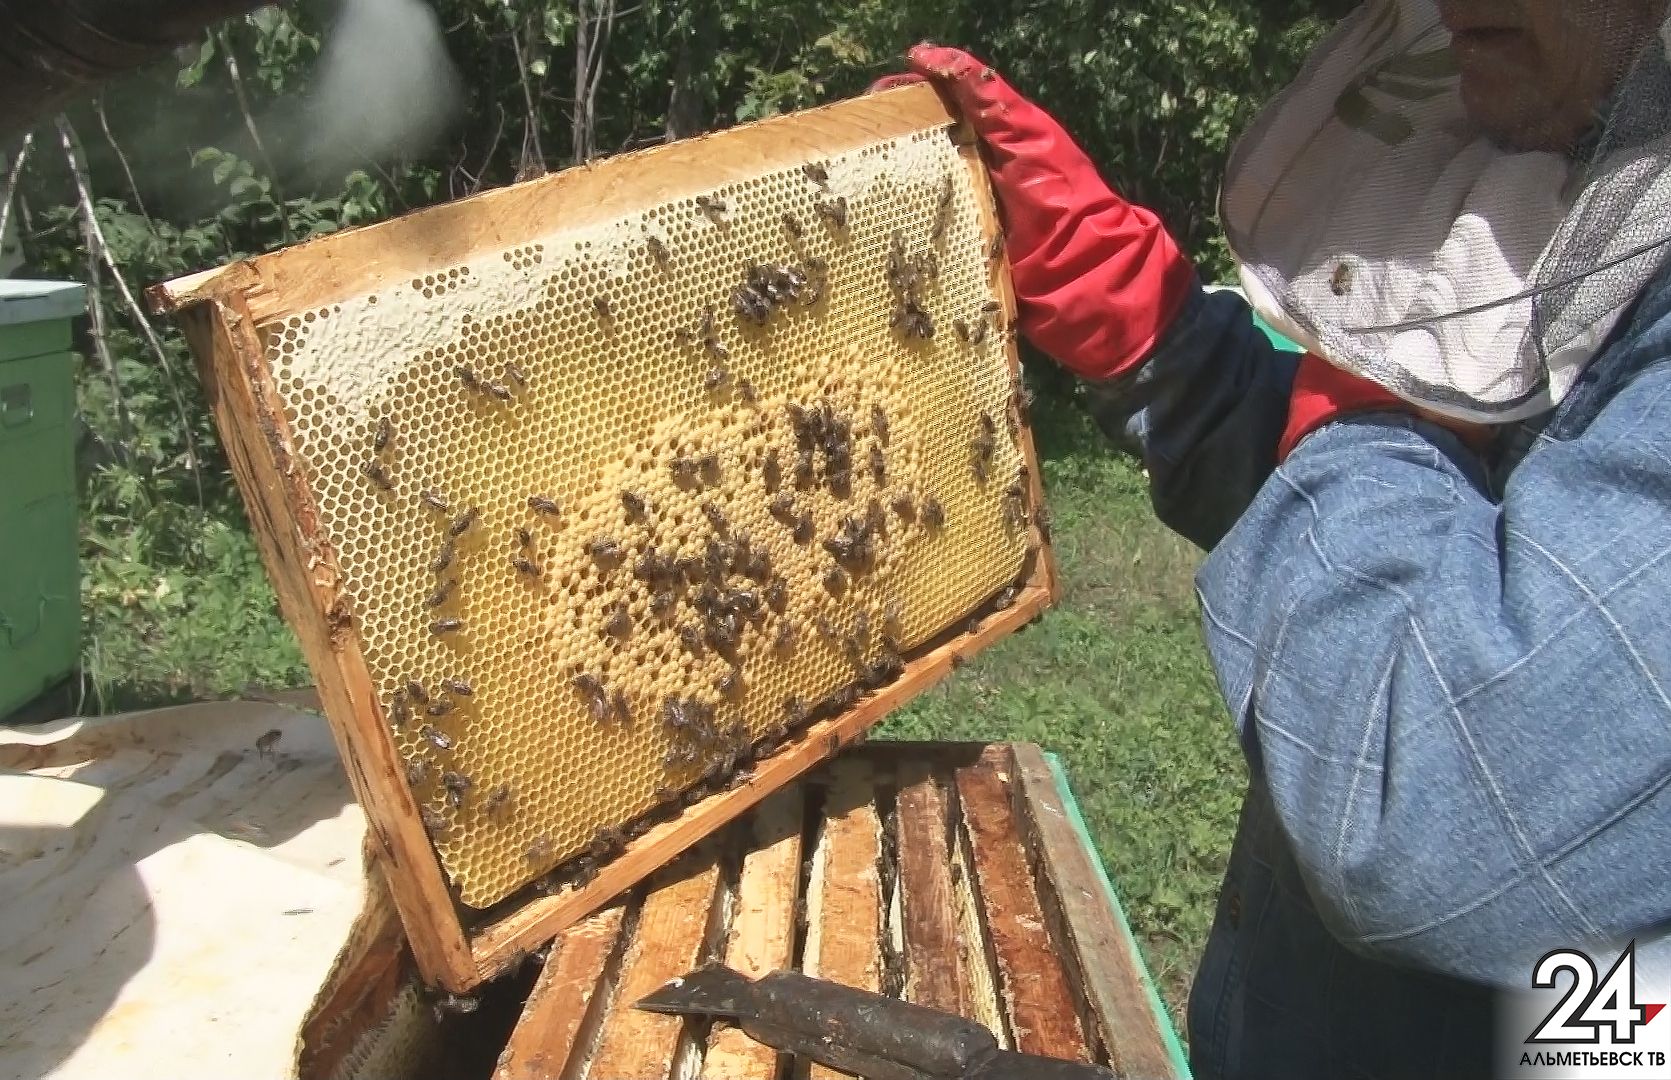 Правильные пчелы дают правильный мед: пчеловод из Альметьевского района рассказал о своем ремесле